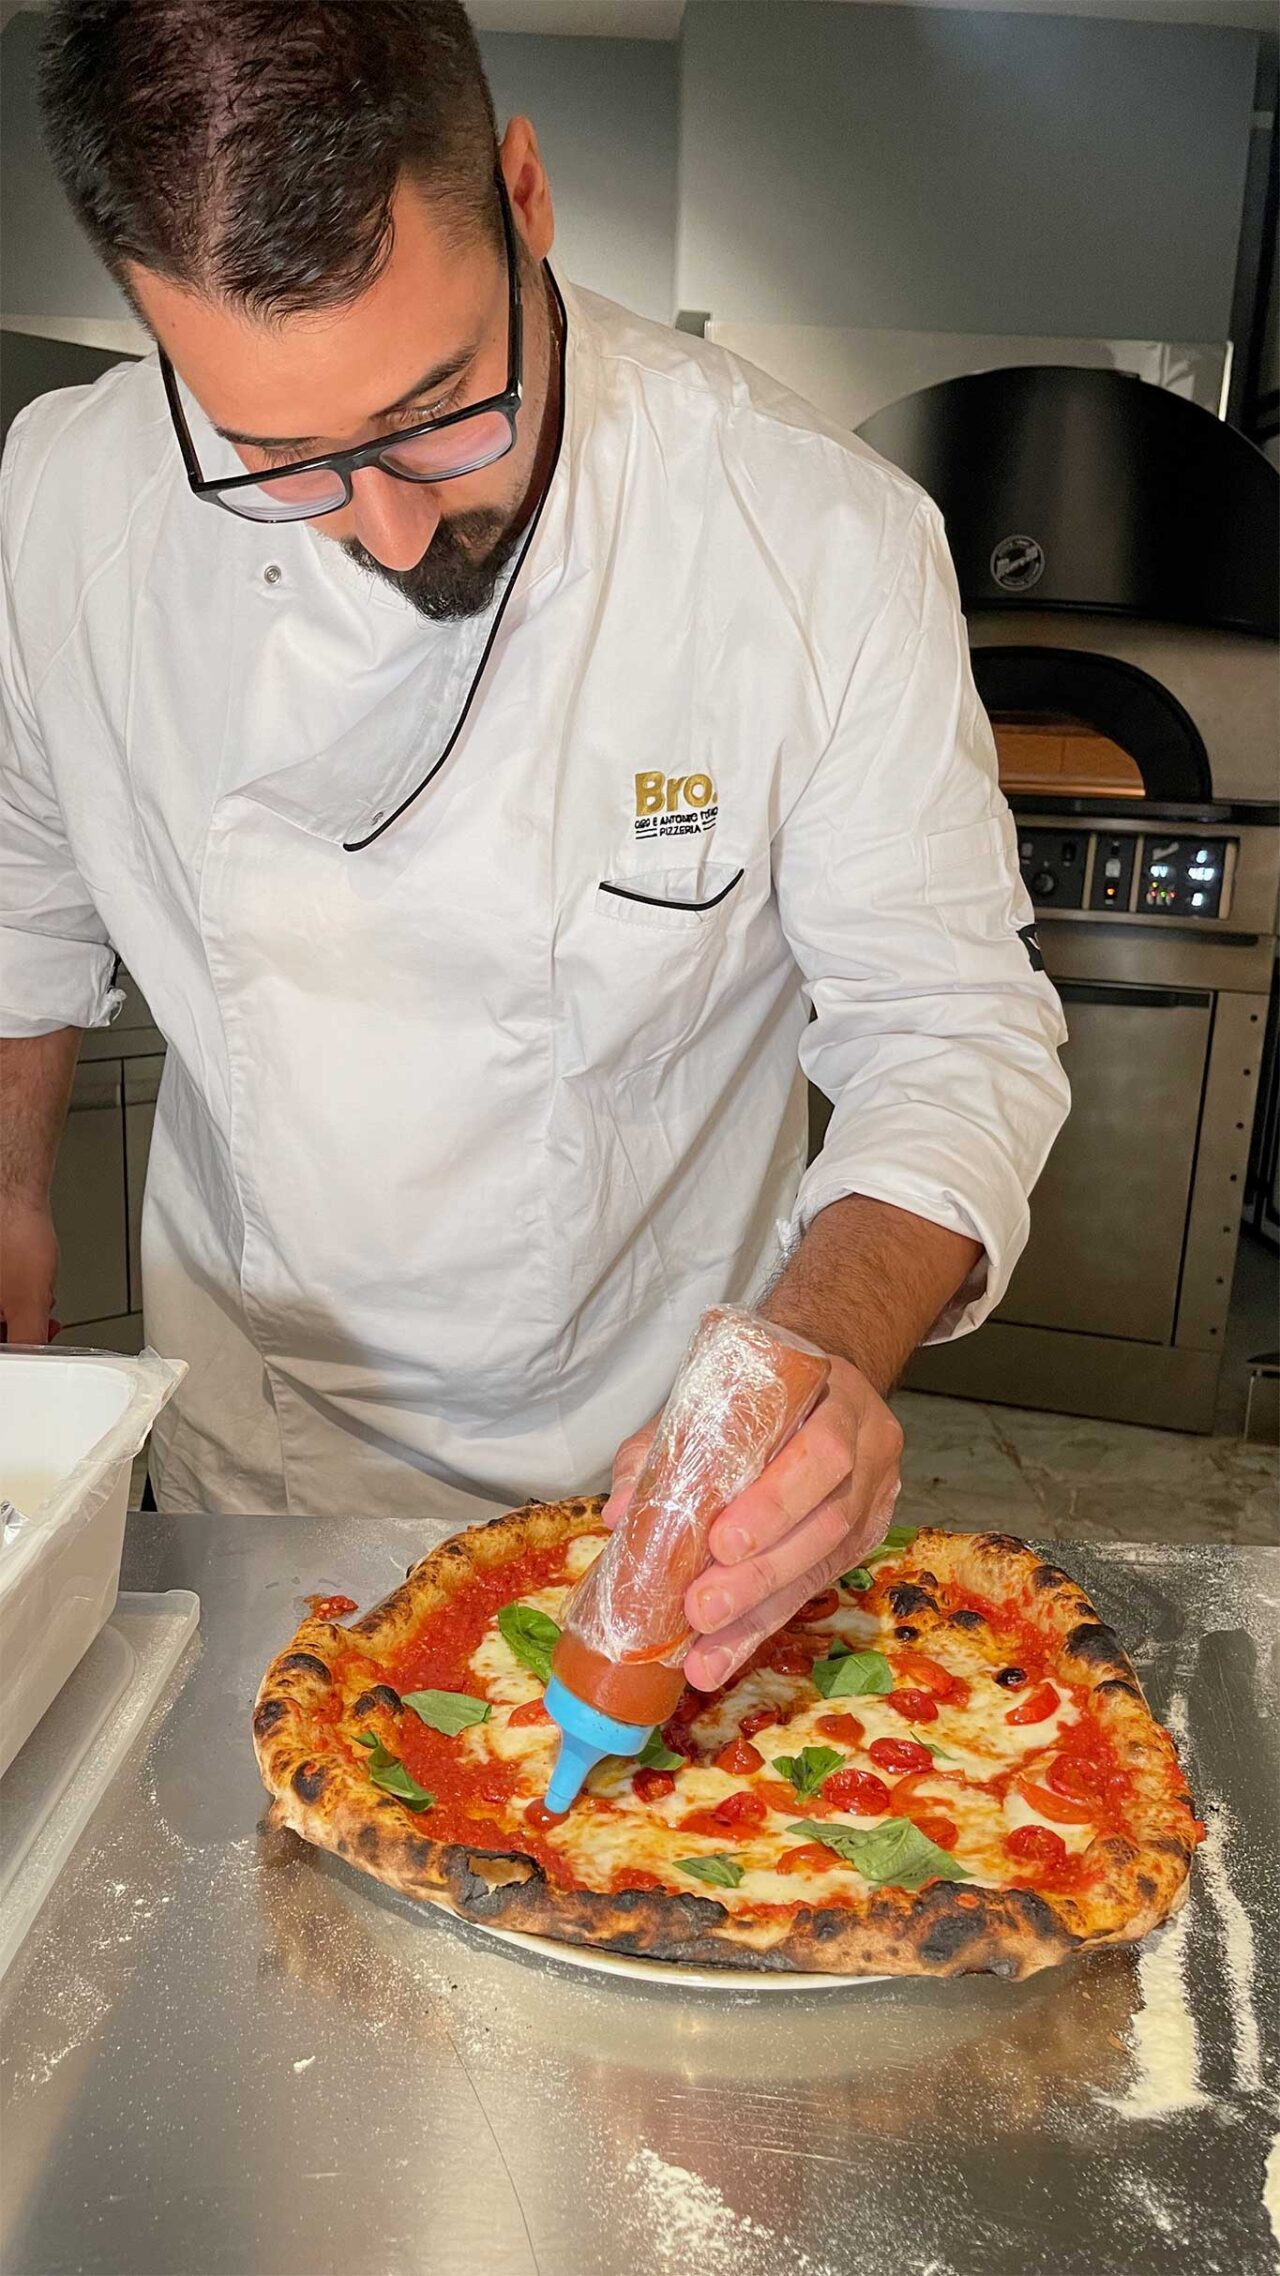 La rifinitura della pizza Fattore Umano della pizzeria Bro a Napoli